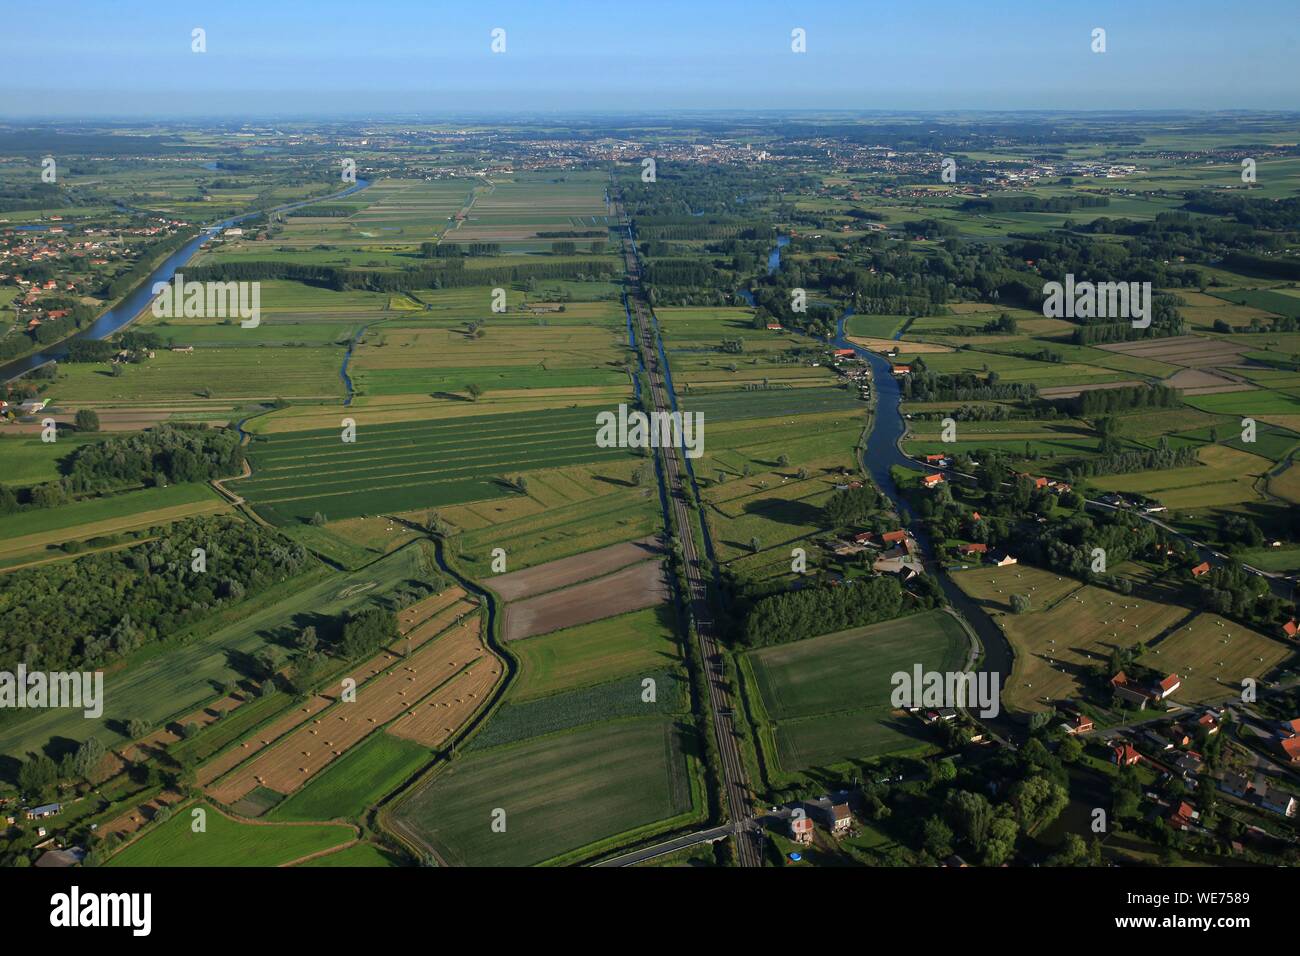 La France, Pas de Calais, Saint Omer, le marais audomarois partagée entre sa part Maraichere et sa partie sauvage (vue aérienne) Banque D'Images